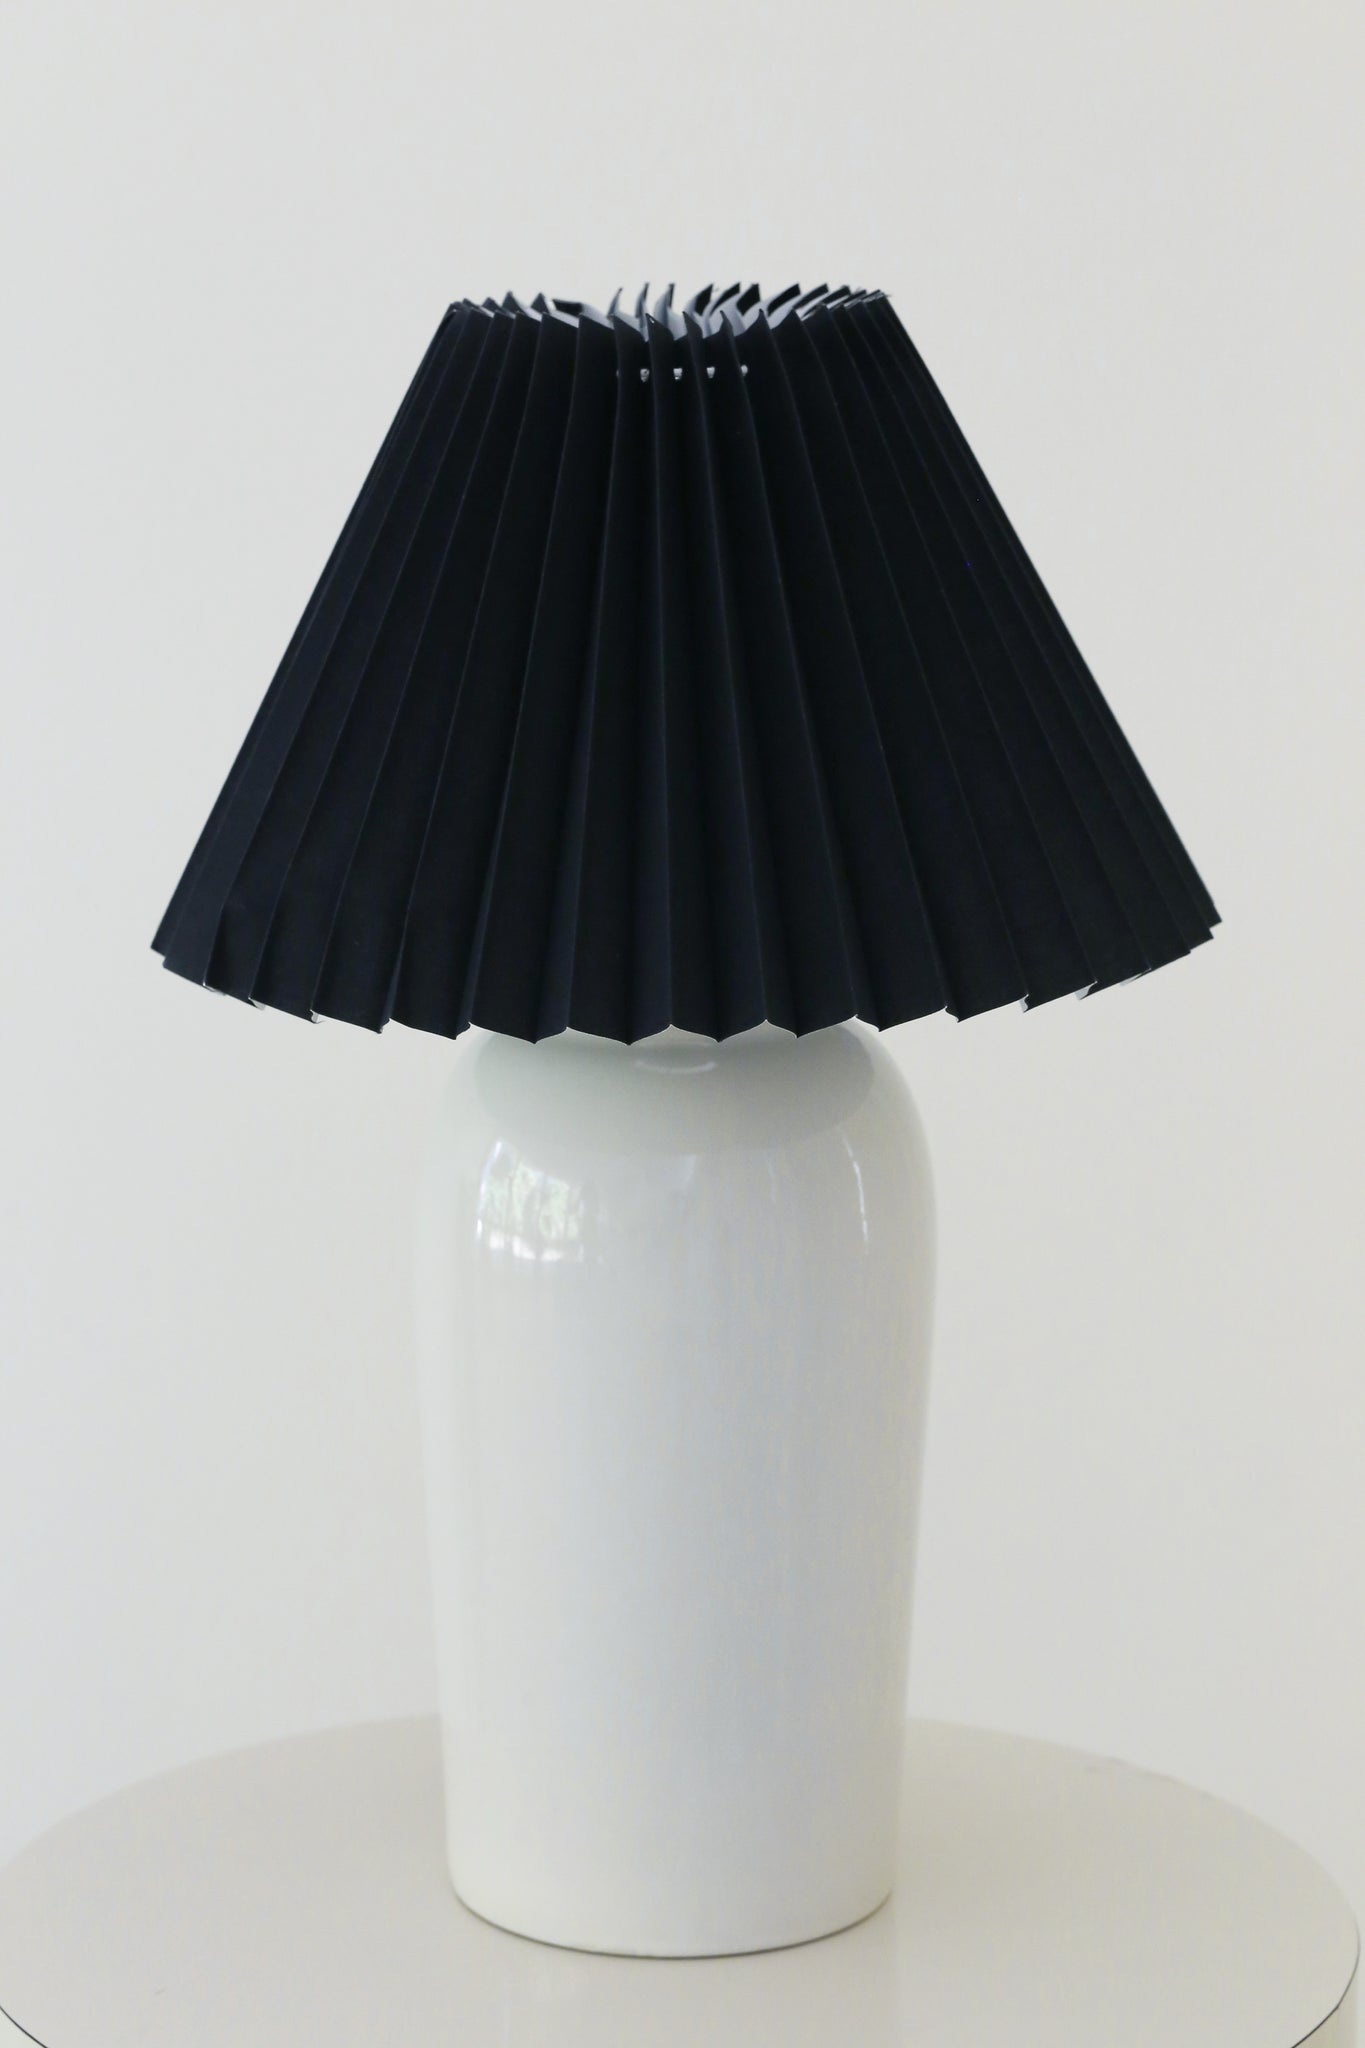 Minimalist Cream Lamp